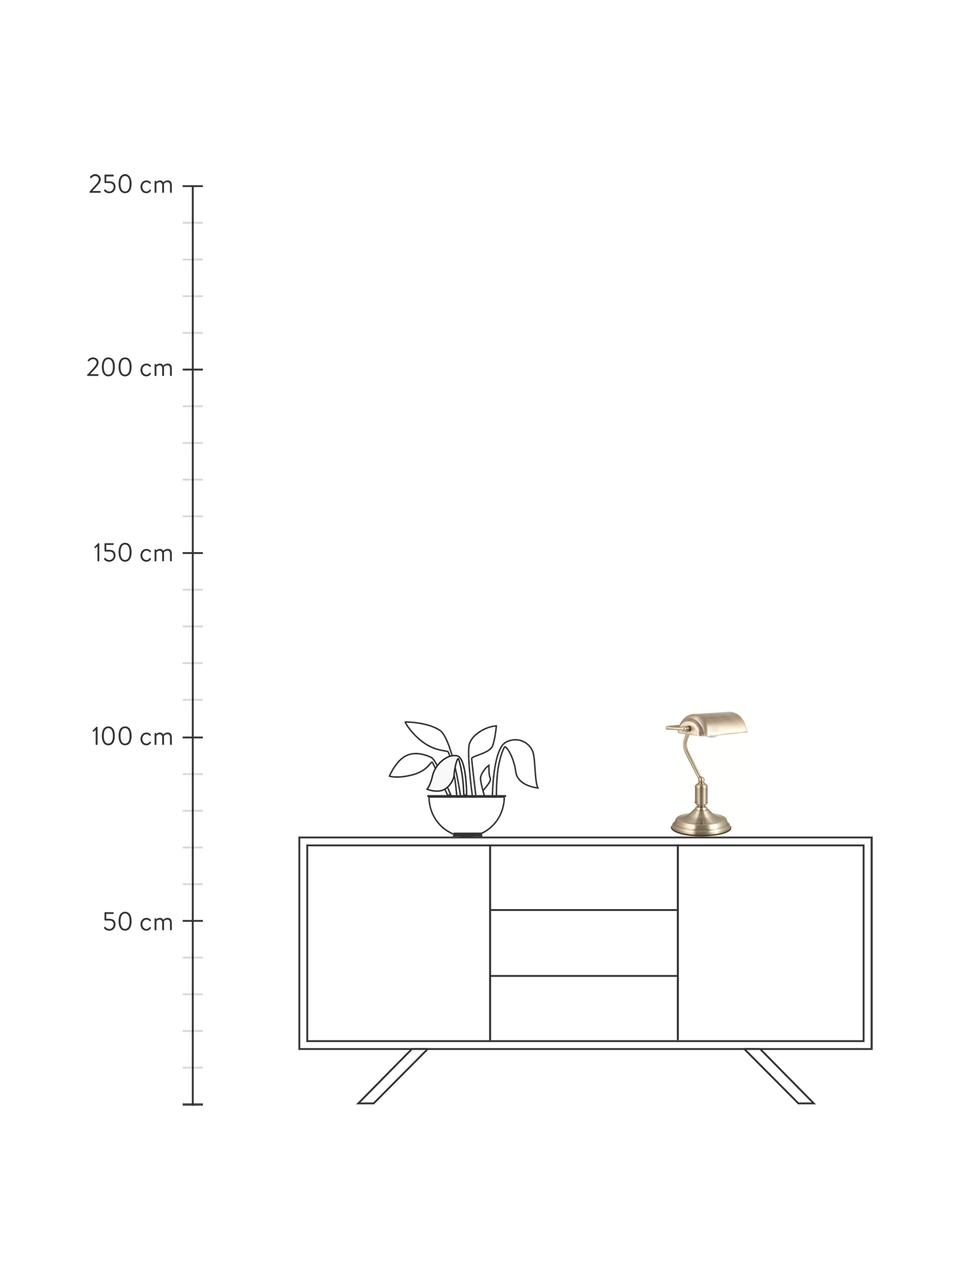 Kleine Retro-Schreibtischlampe Bank aus Metall, Lampenschirm: Metall, beschichtet, Messingfarben, B 22 x H 34 cm